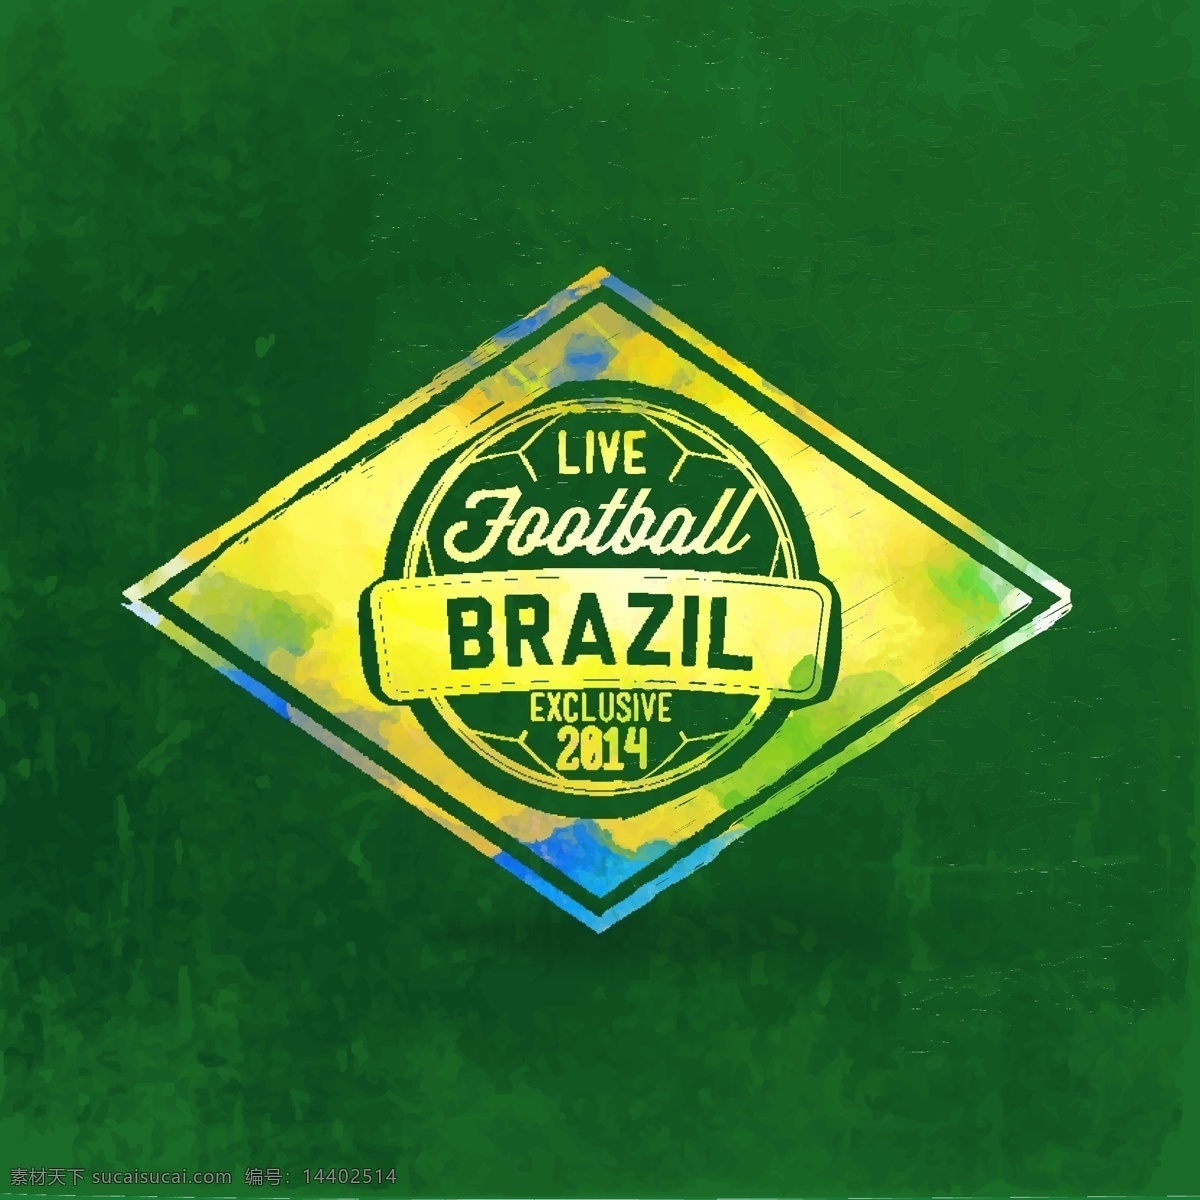 巴西 世界杯 晕染 图案 巴西世界杯 足球 体育运动 晕染背景 足球主题 生活百科 矢量素材 绿色